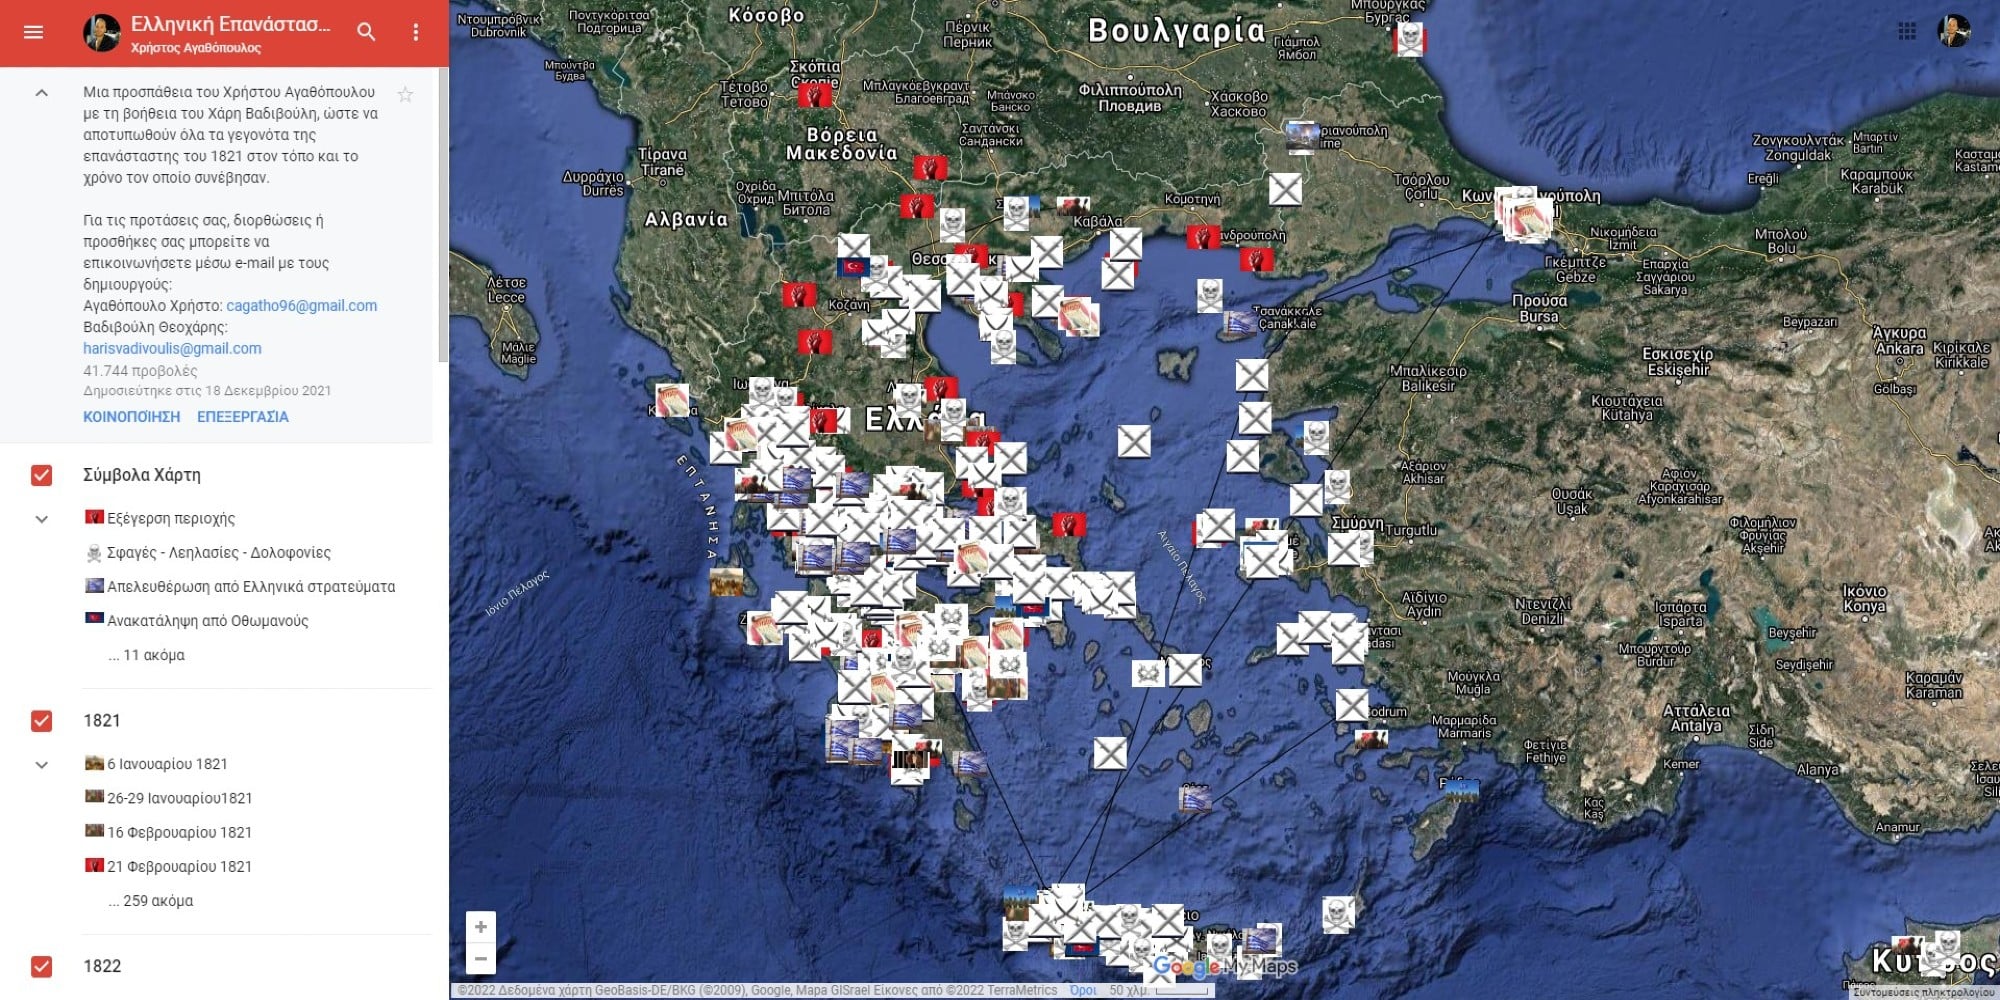 Ψηφιακός χάρτης με τα ορόσημα της ελληνικής Επανάστασης